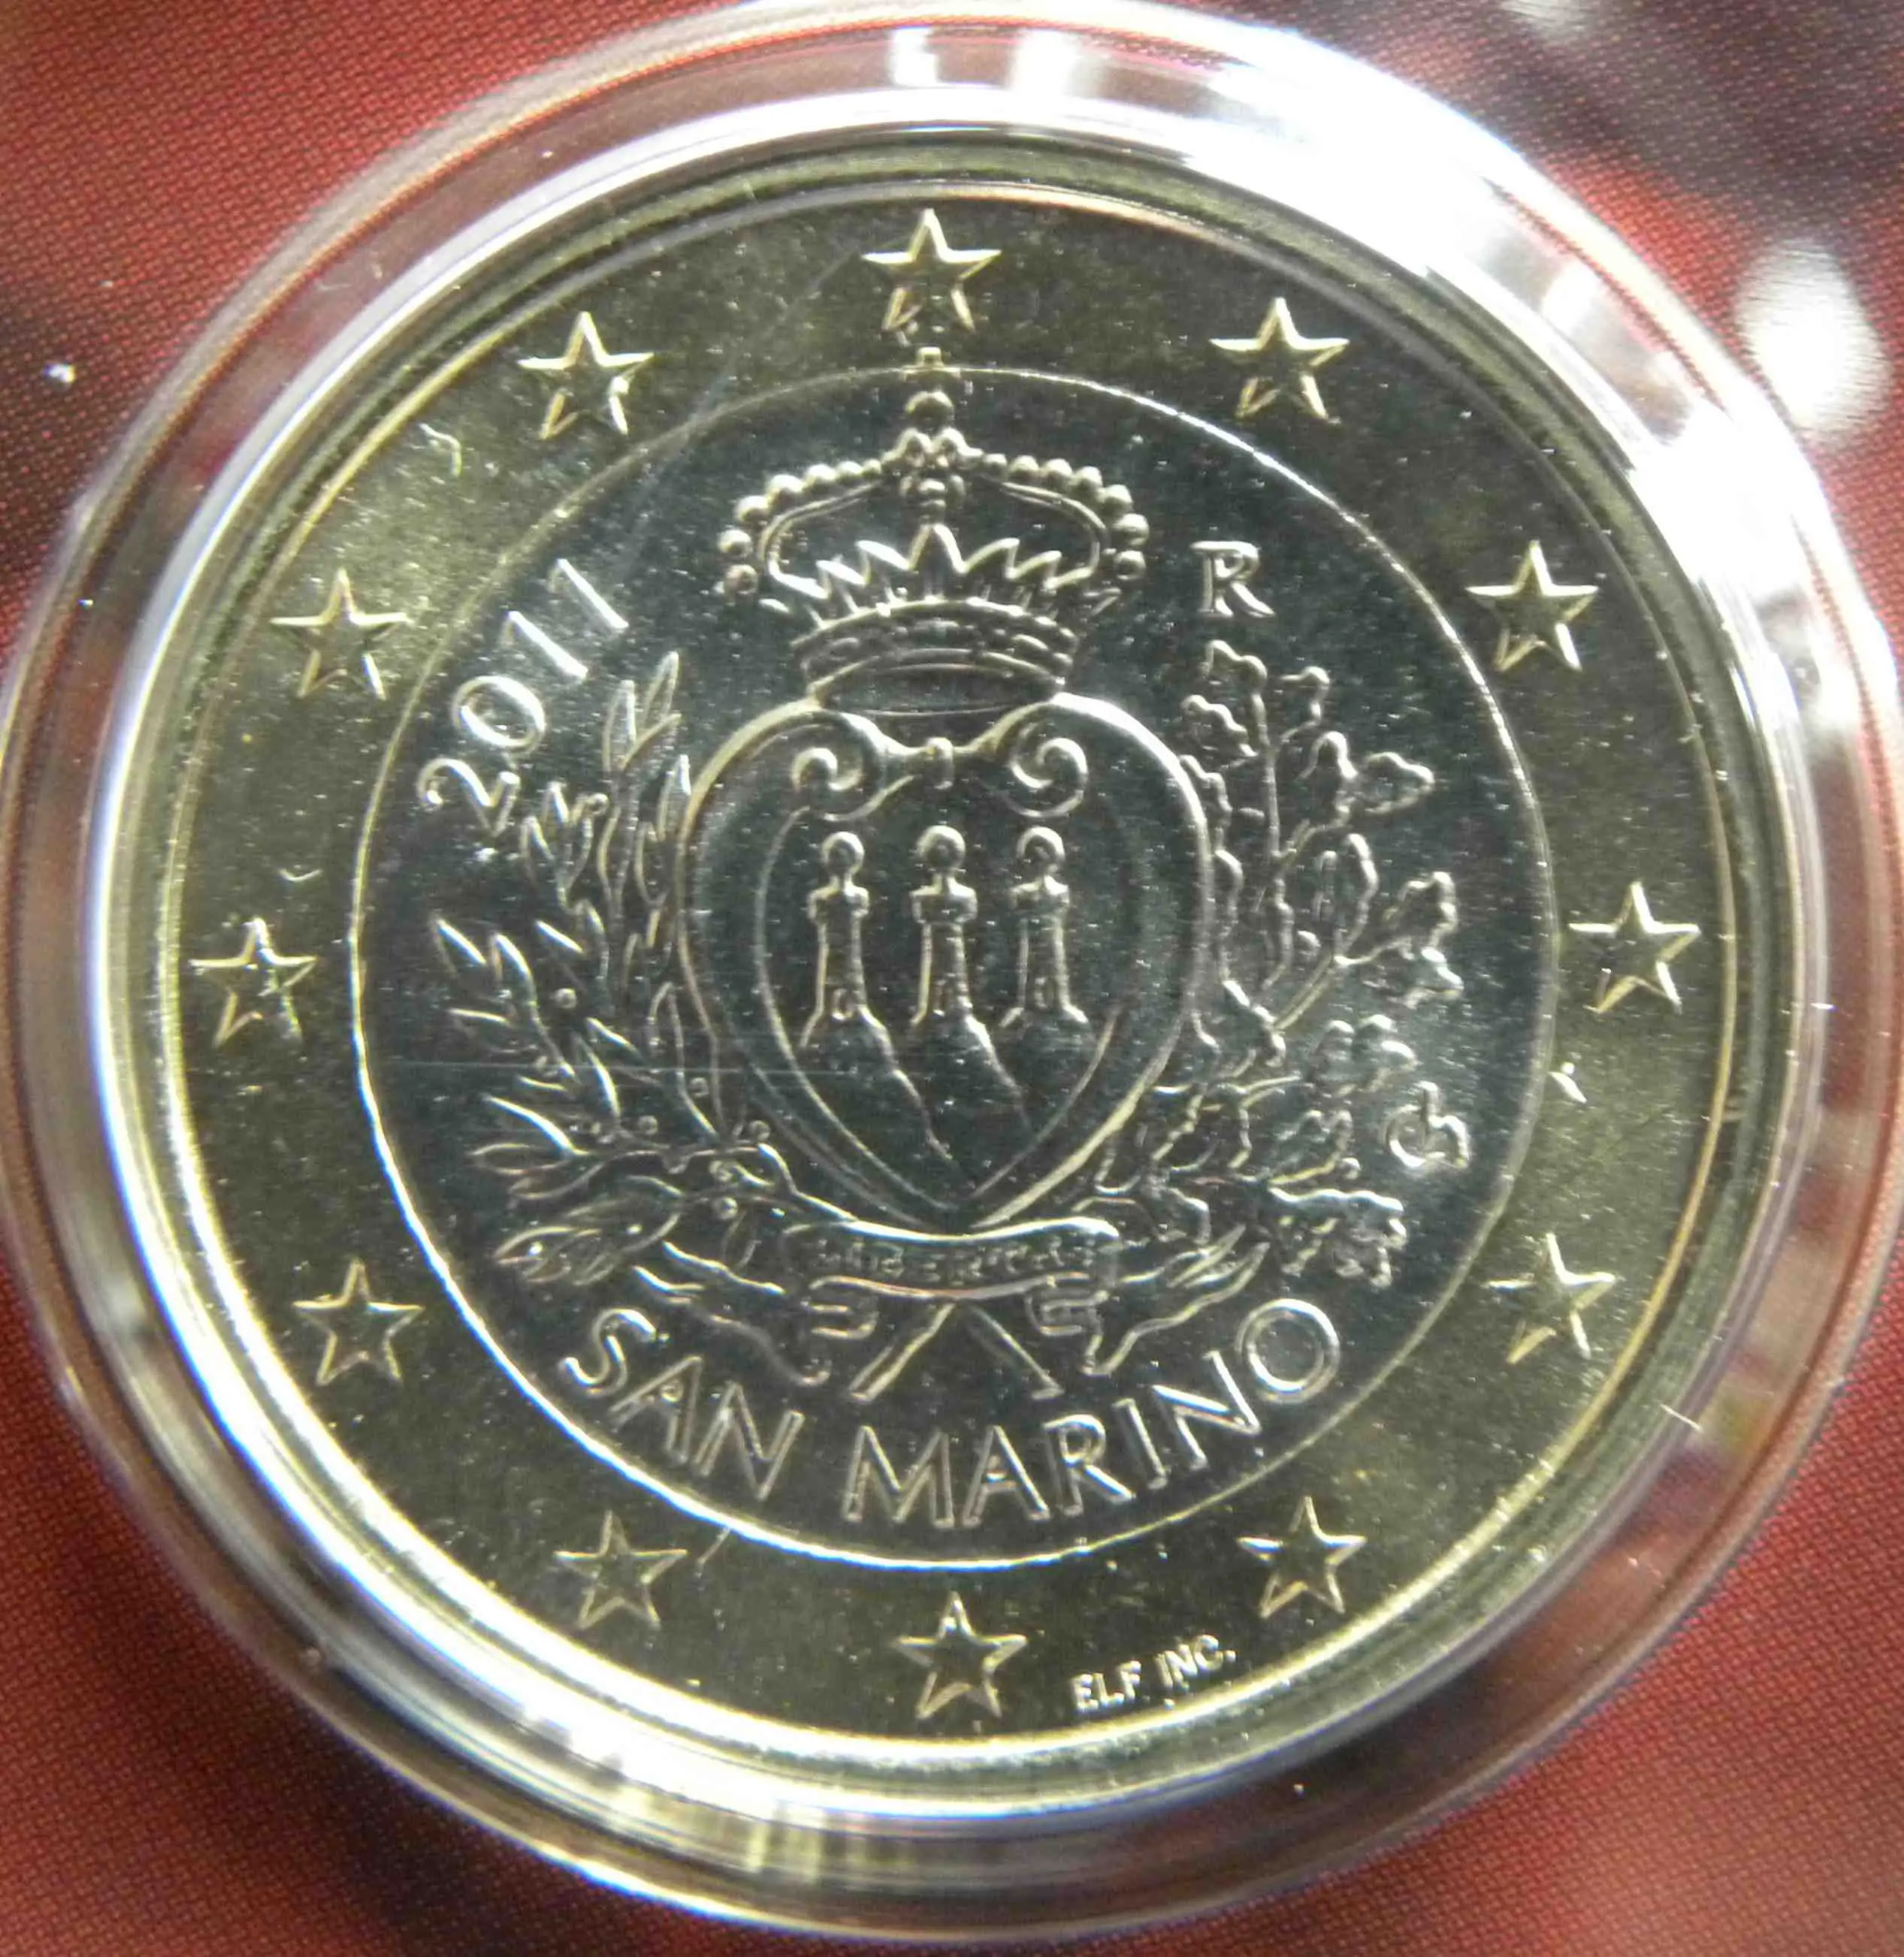 San Marino 1 Euro Münze 2011 - euro-muenzen.tv - Der Online Euromünzen